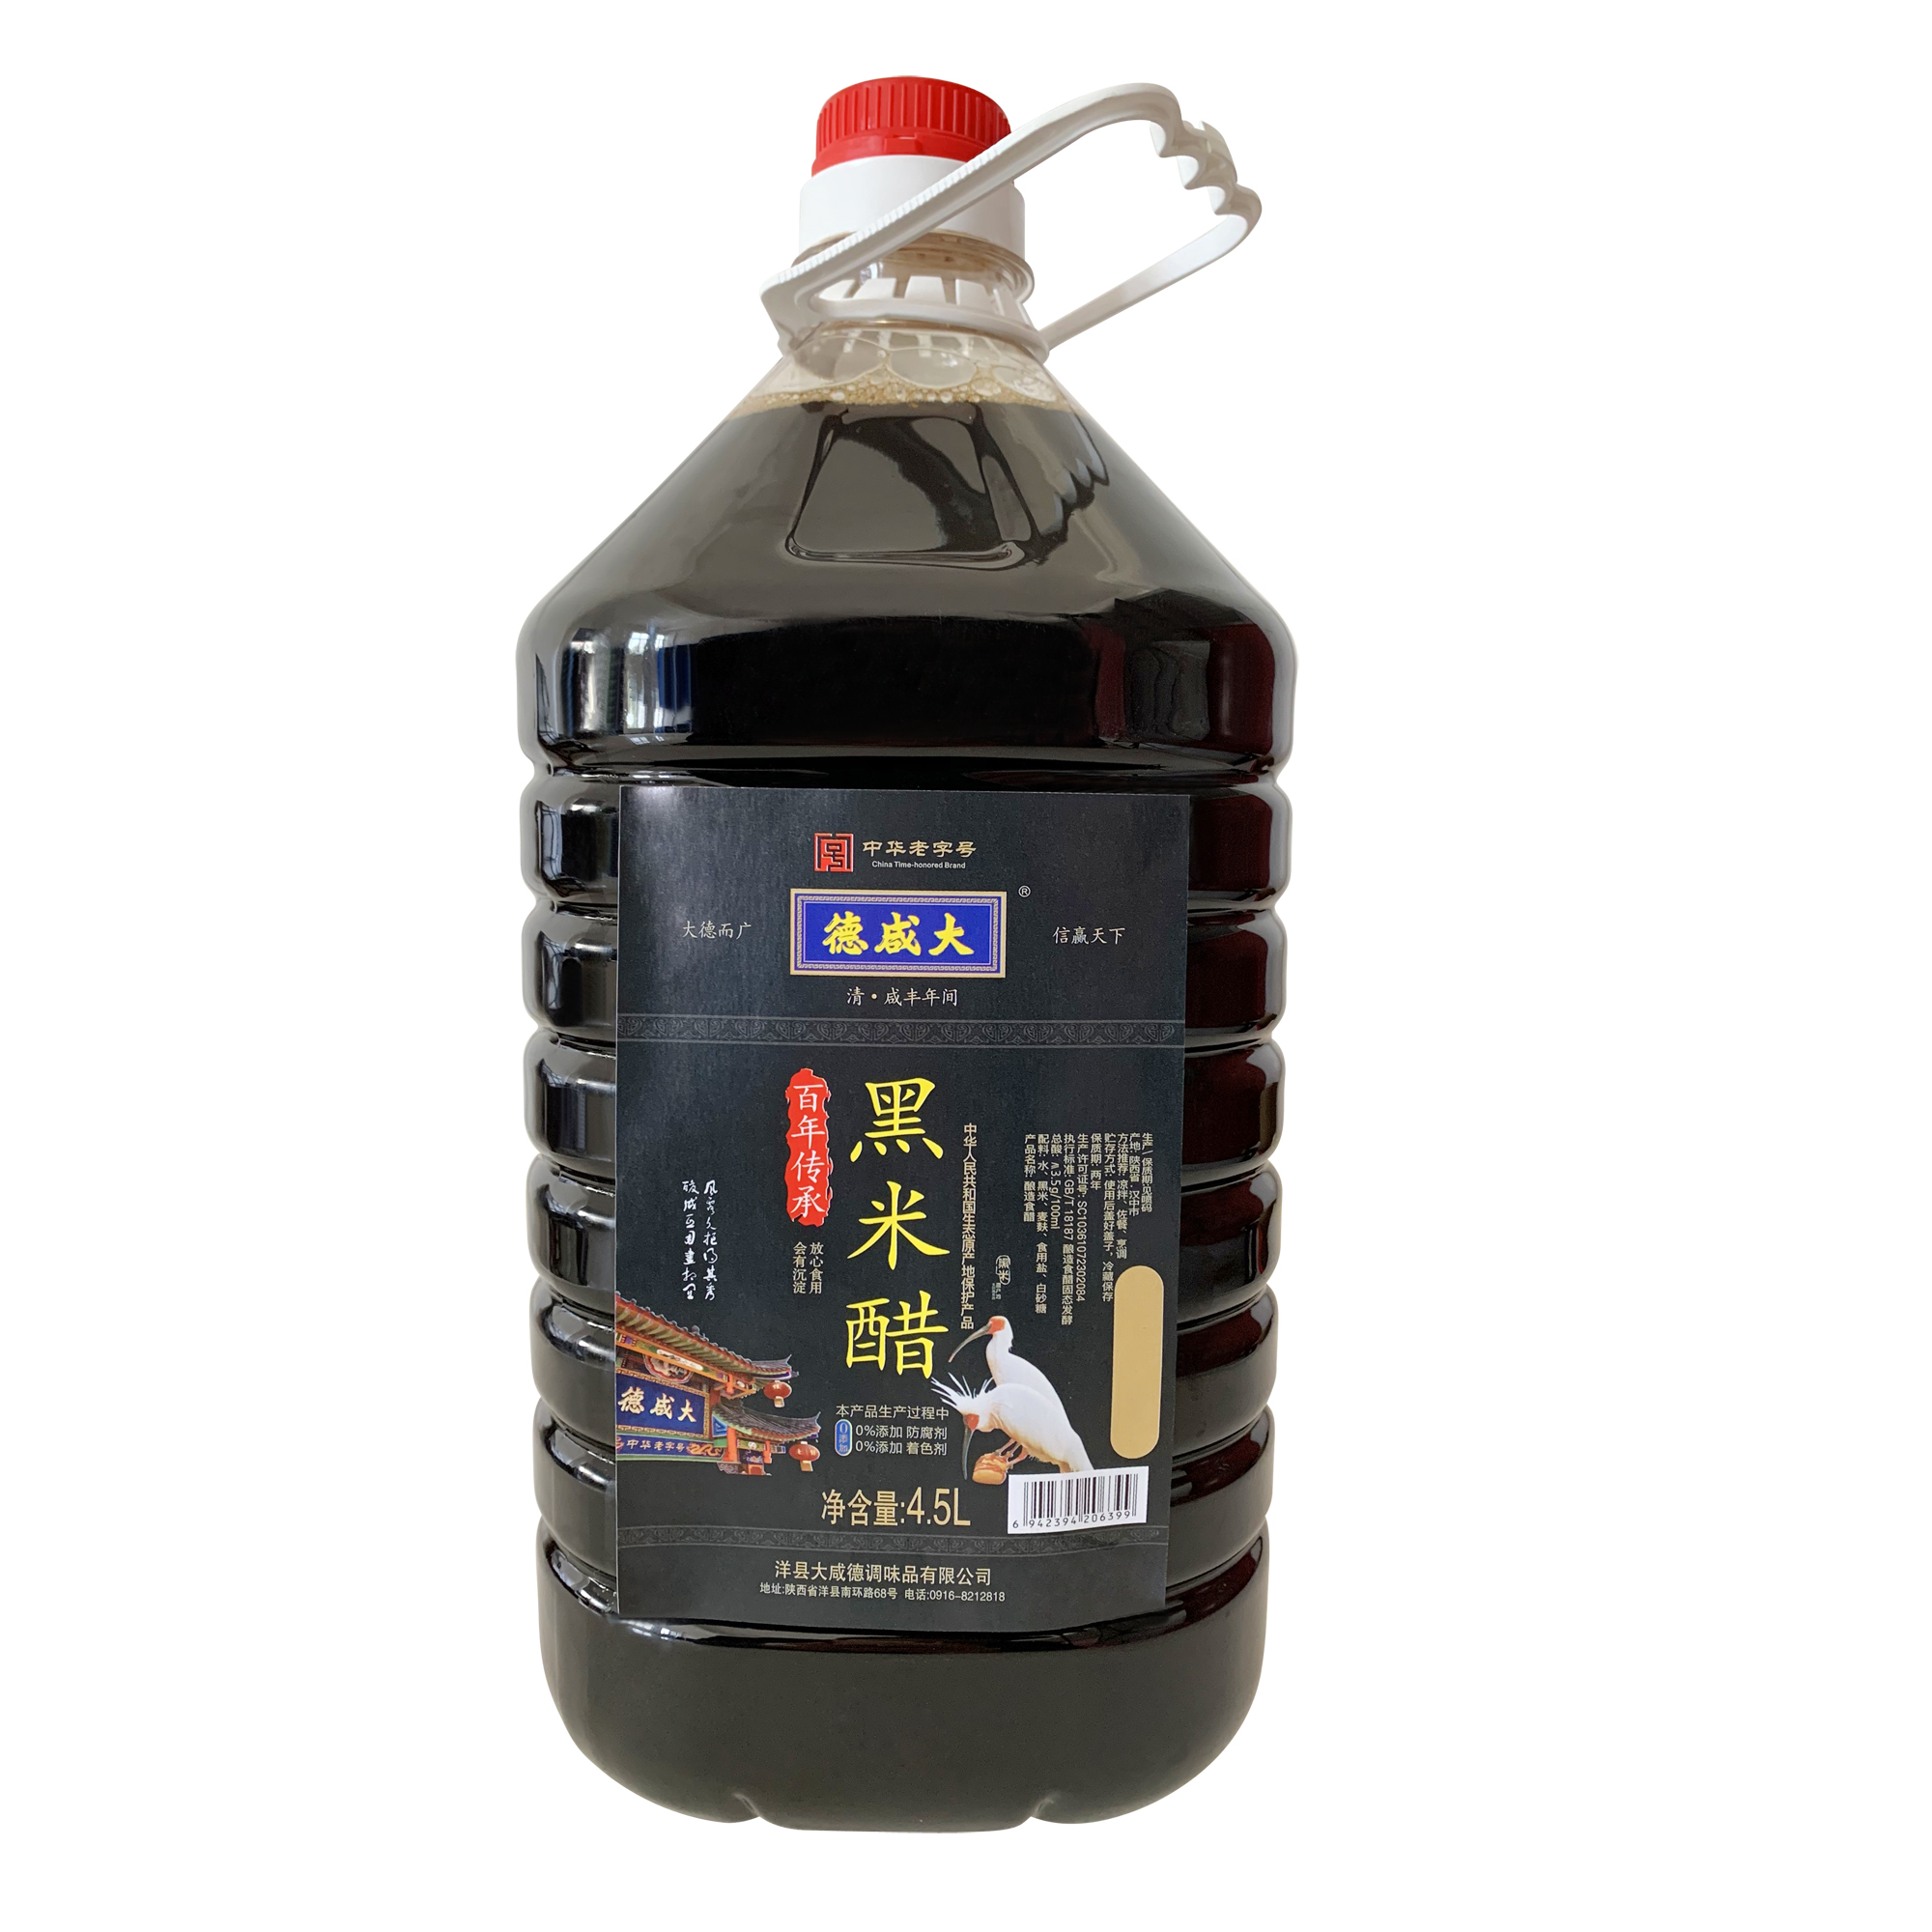 【厂家招商】大咸德百年传承黑米醋4.5L装